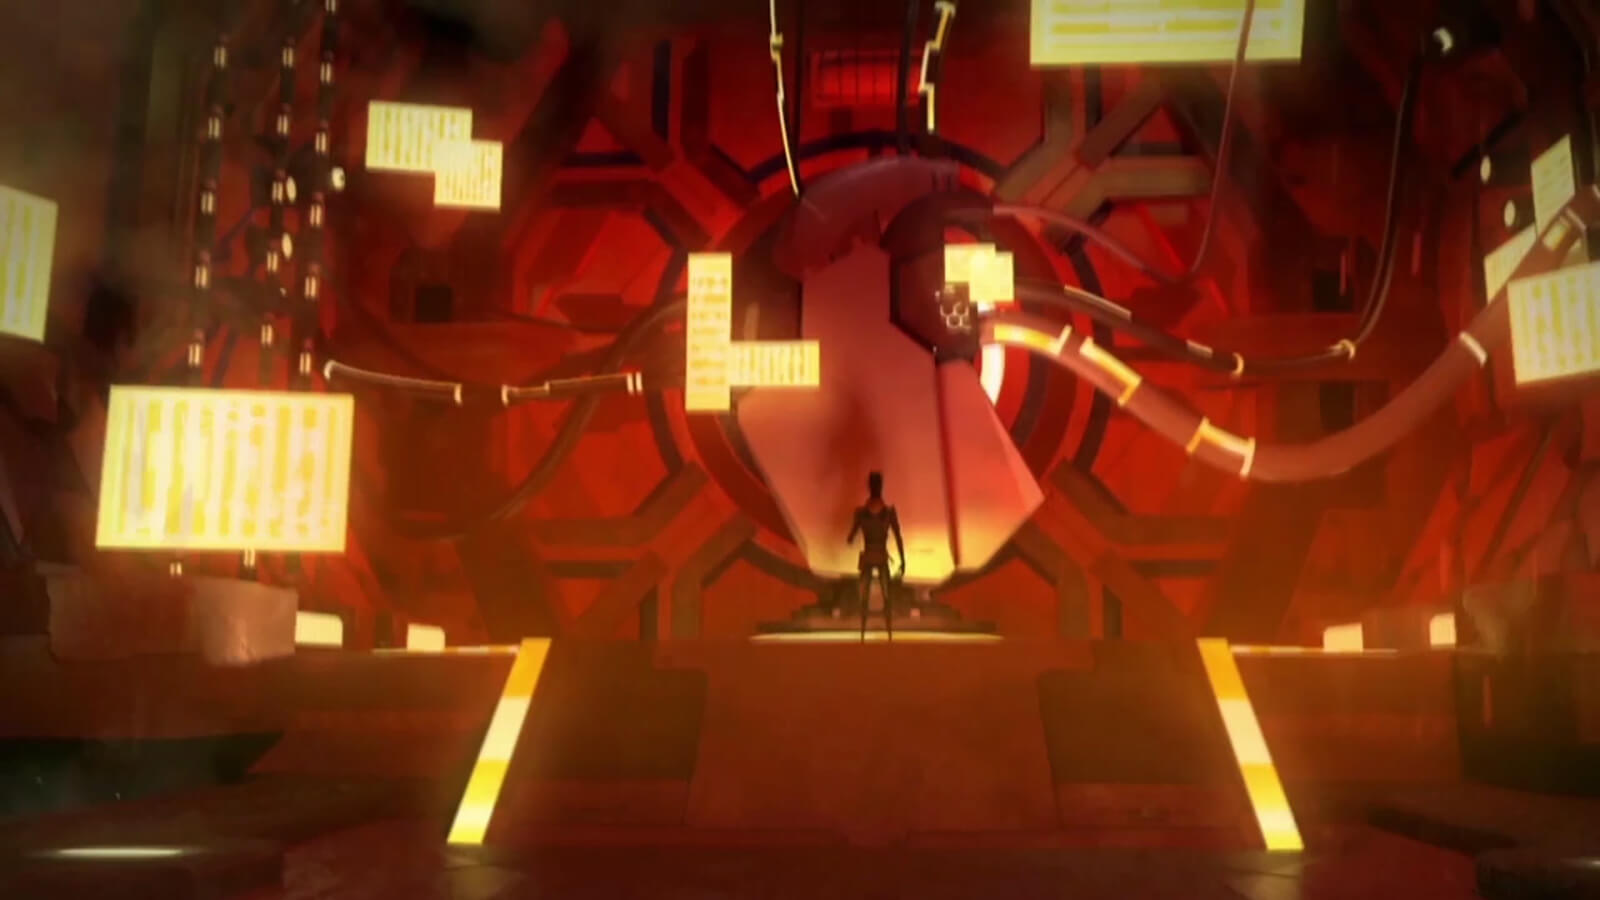 Un hombre se encuentra frente a una enorme máquina conectada a la pared a través de tubos. La habitación está teñida de una luz roja con tonos amarillentos.